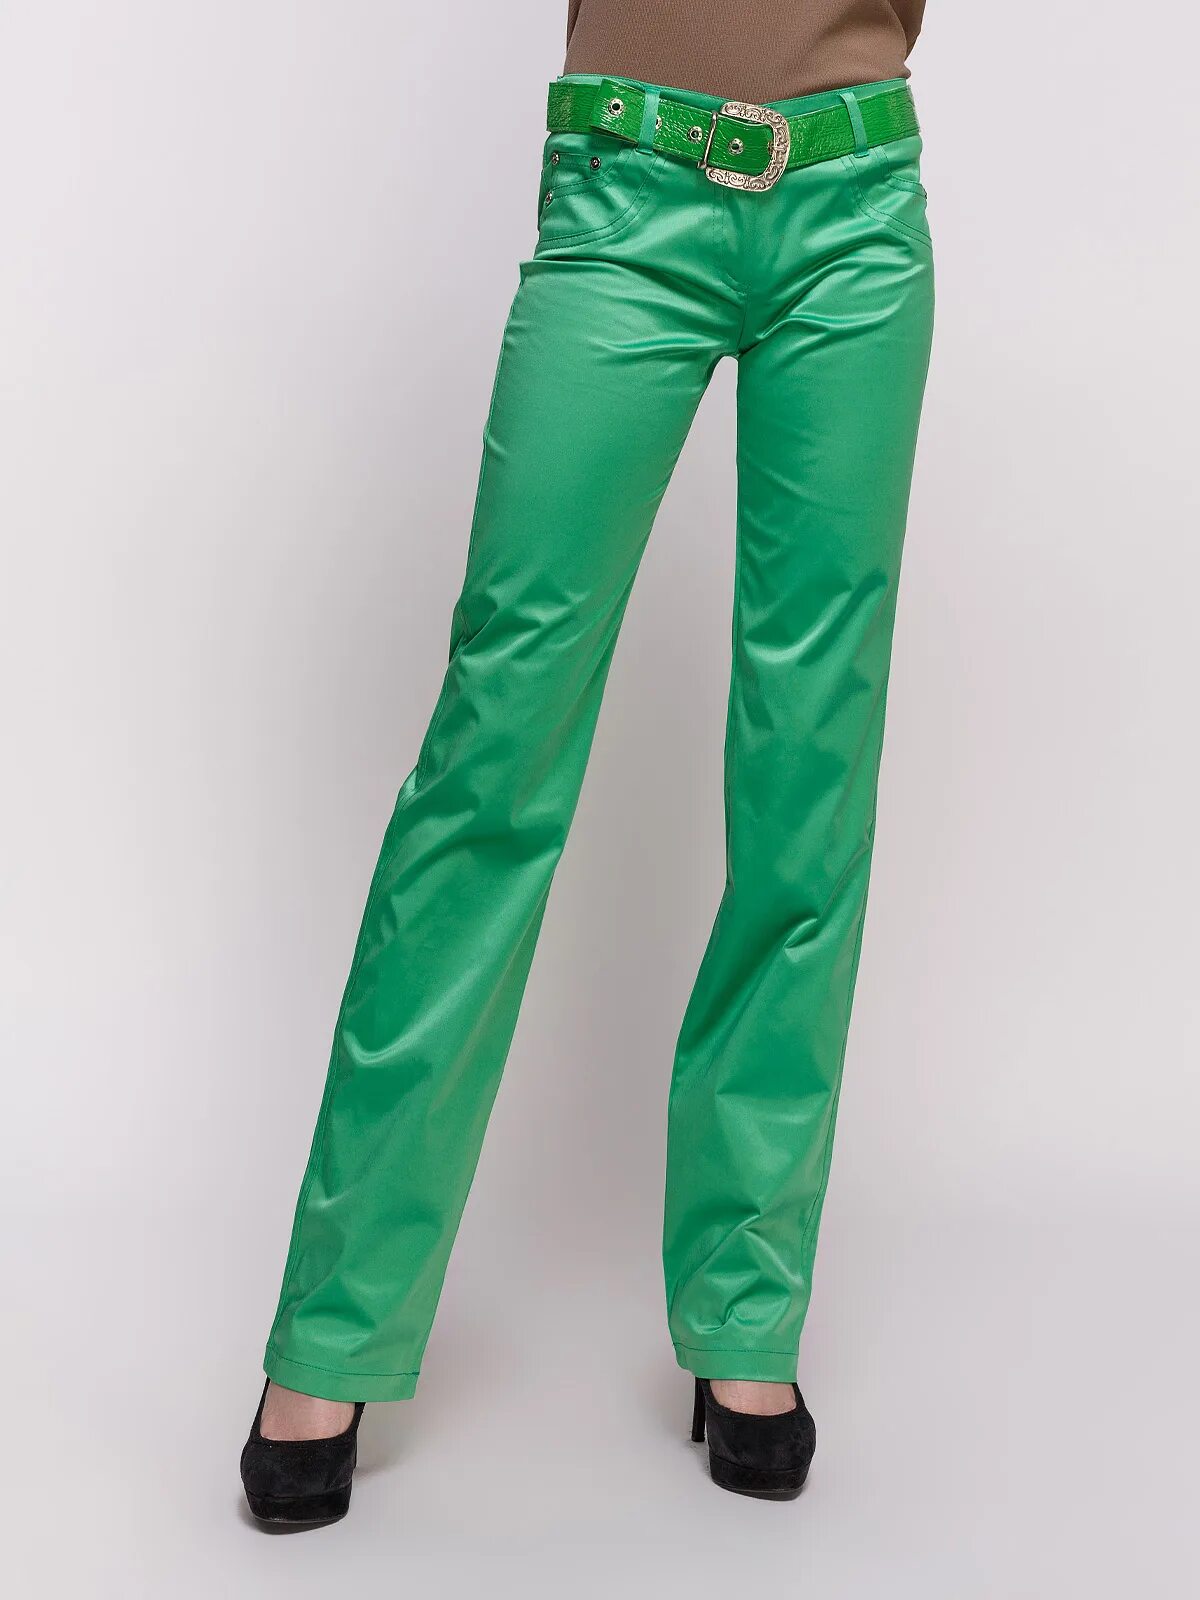 Купить зеленые штаны. Зелёные брюки женские. Салатовые брюки женские. Зелёные штаны женские. Брюки из экокожи зеленые.